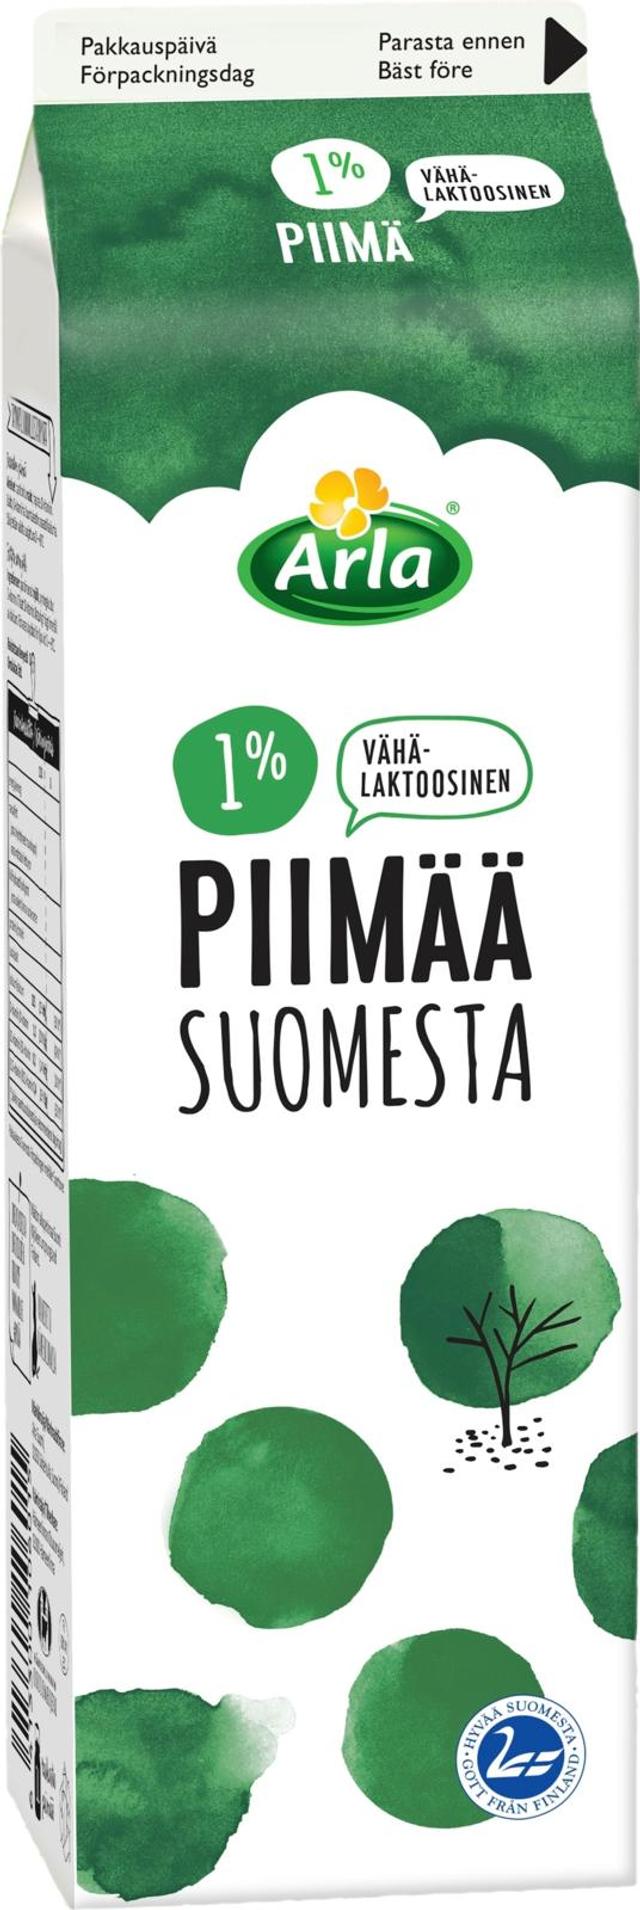 Arla 1L 1%  Suomesta vähälaktoosinen piimä